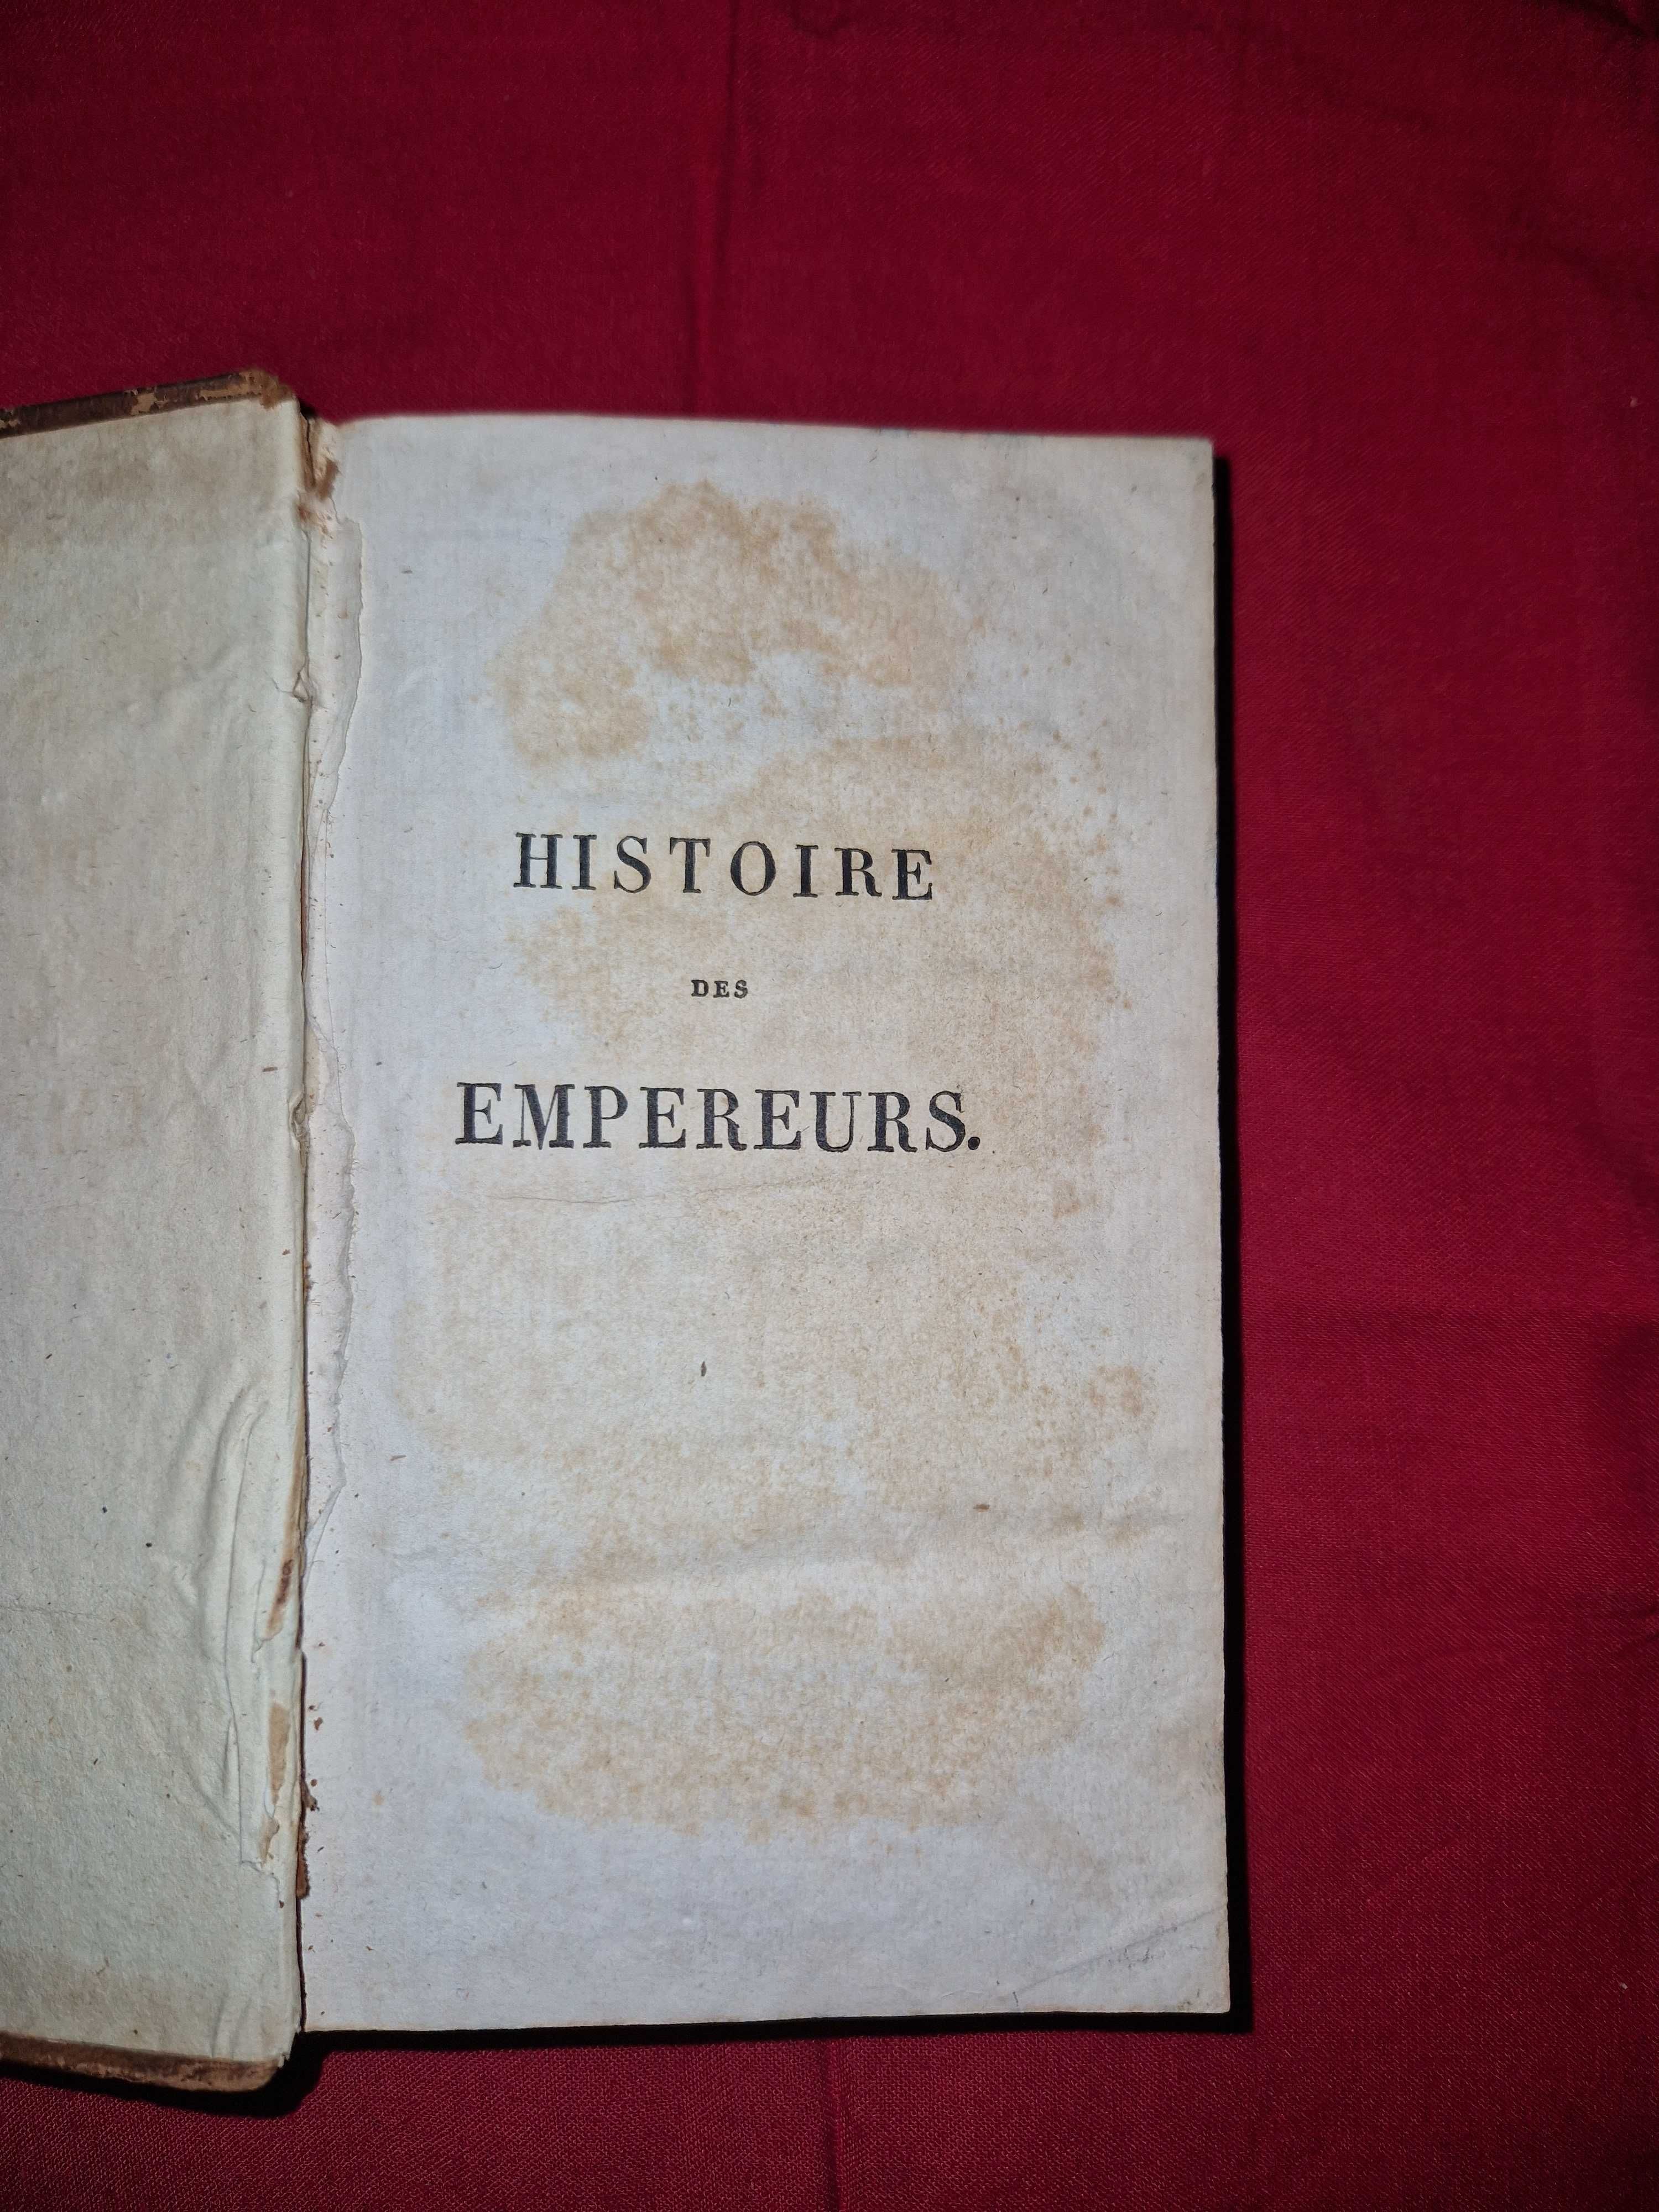 Carte veche Histoires des Empereurs Romains, 1826